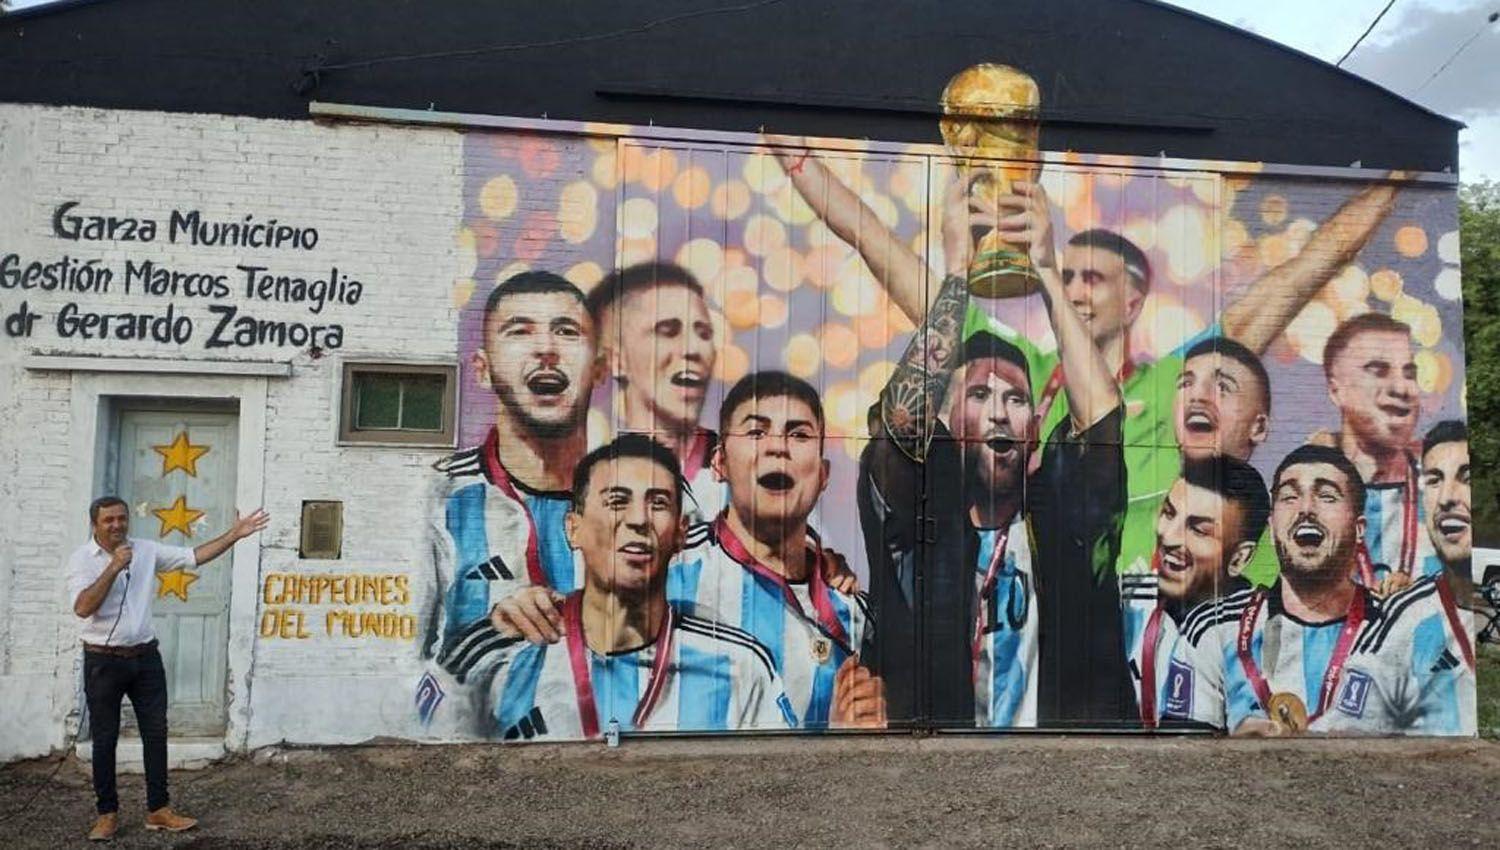 Campeones del mundo- En Garza descubren un mural con la imagen del festejo de la seleccioacuten